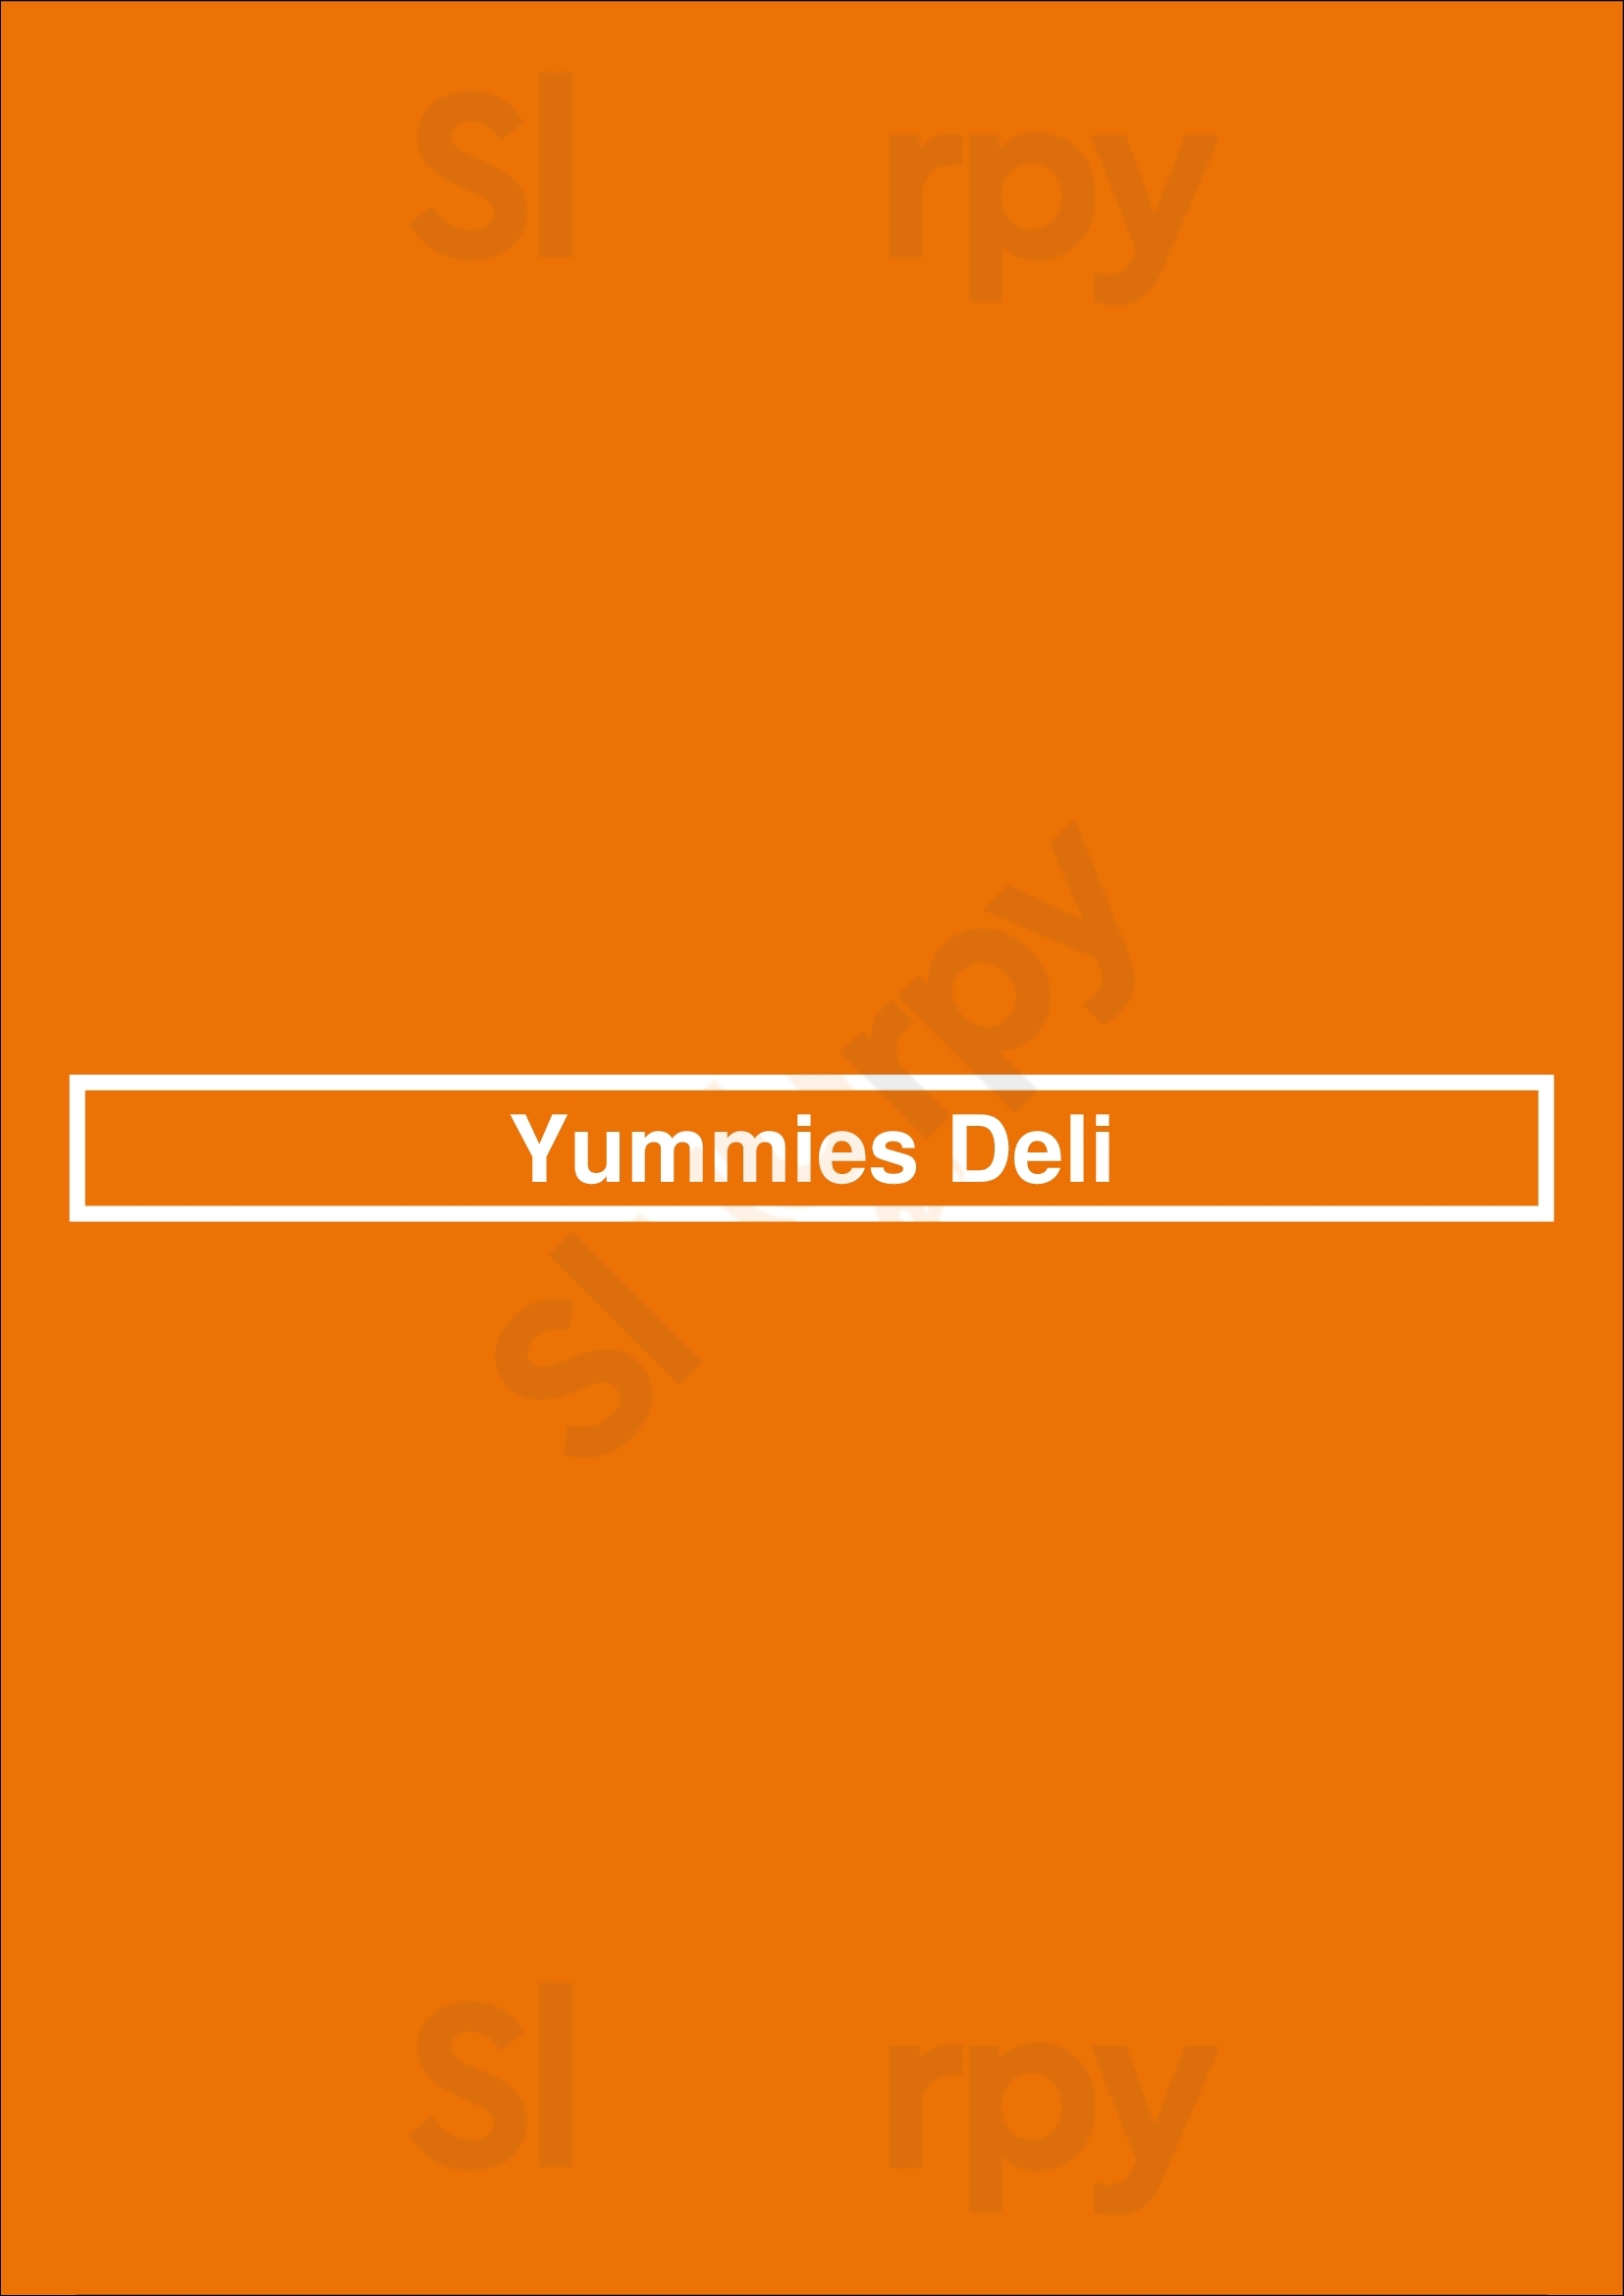 Yummies Deli Hamburg Menu - 1